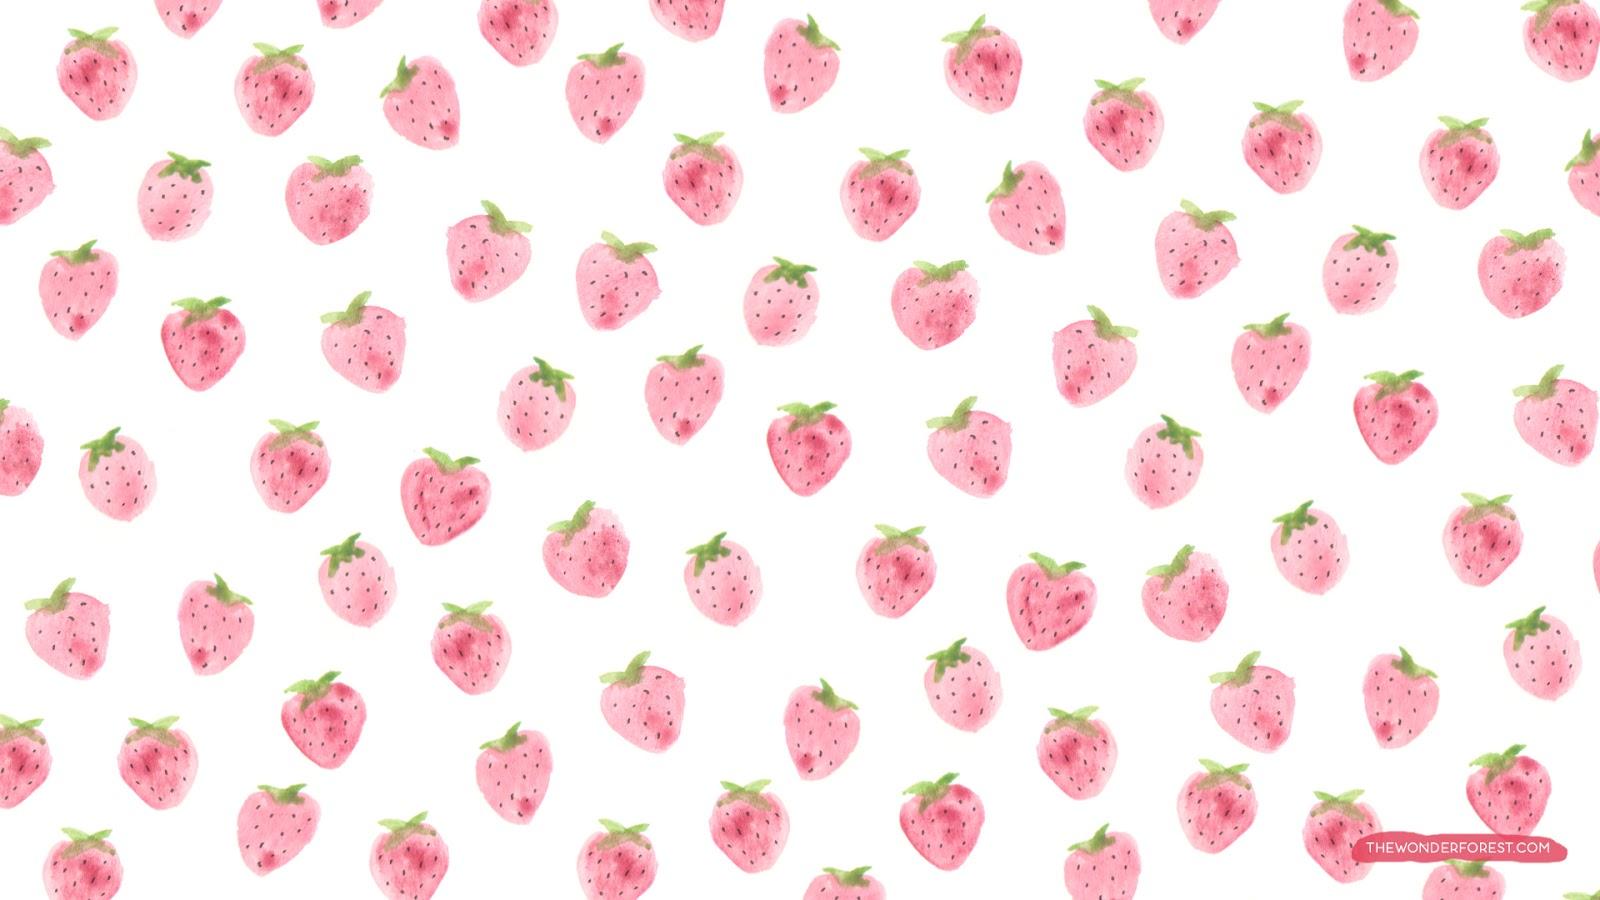 Fruity iPhone and Desktop Wallpaper